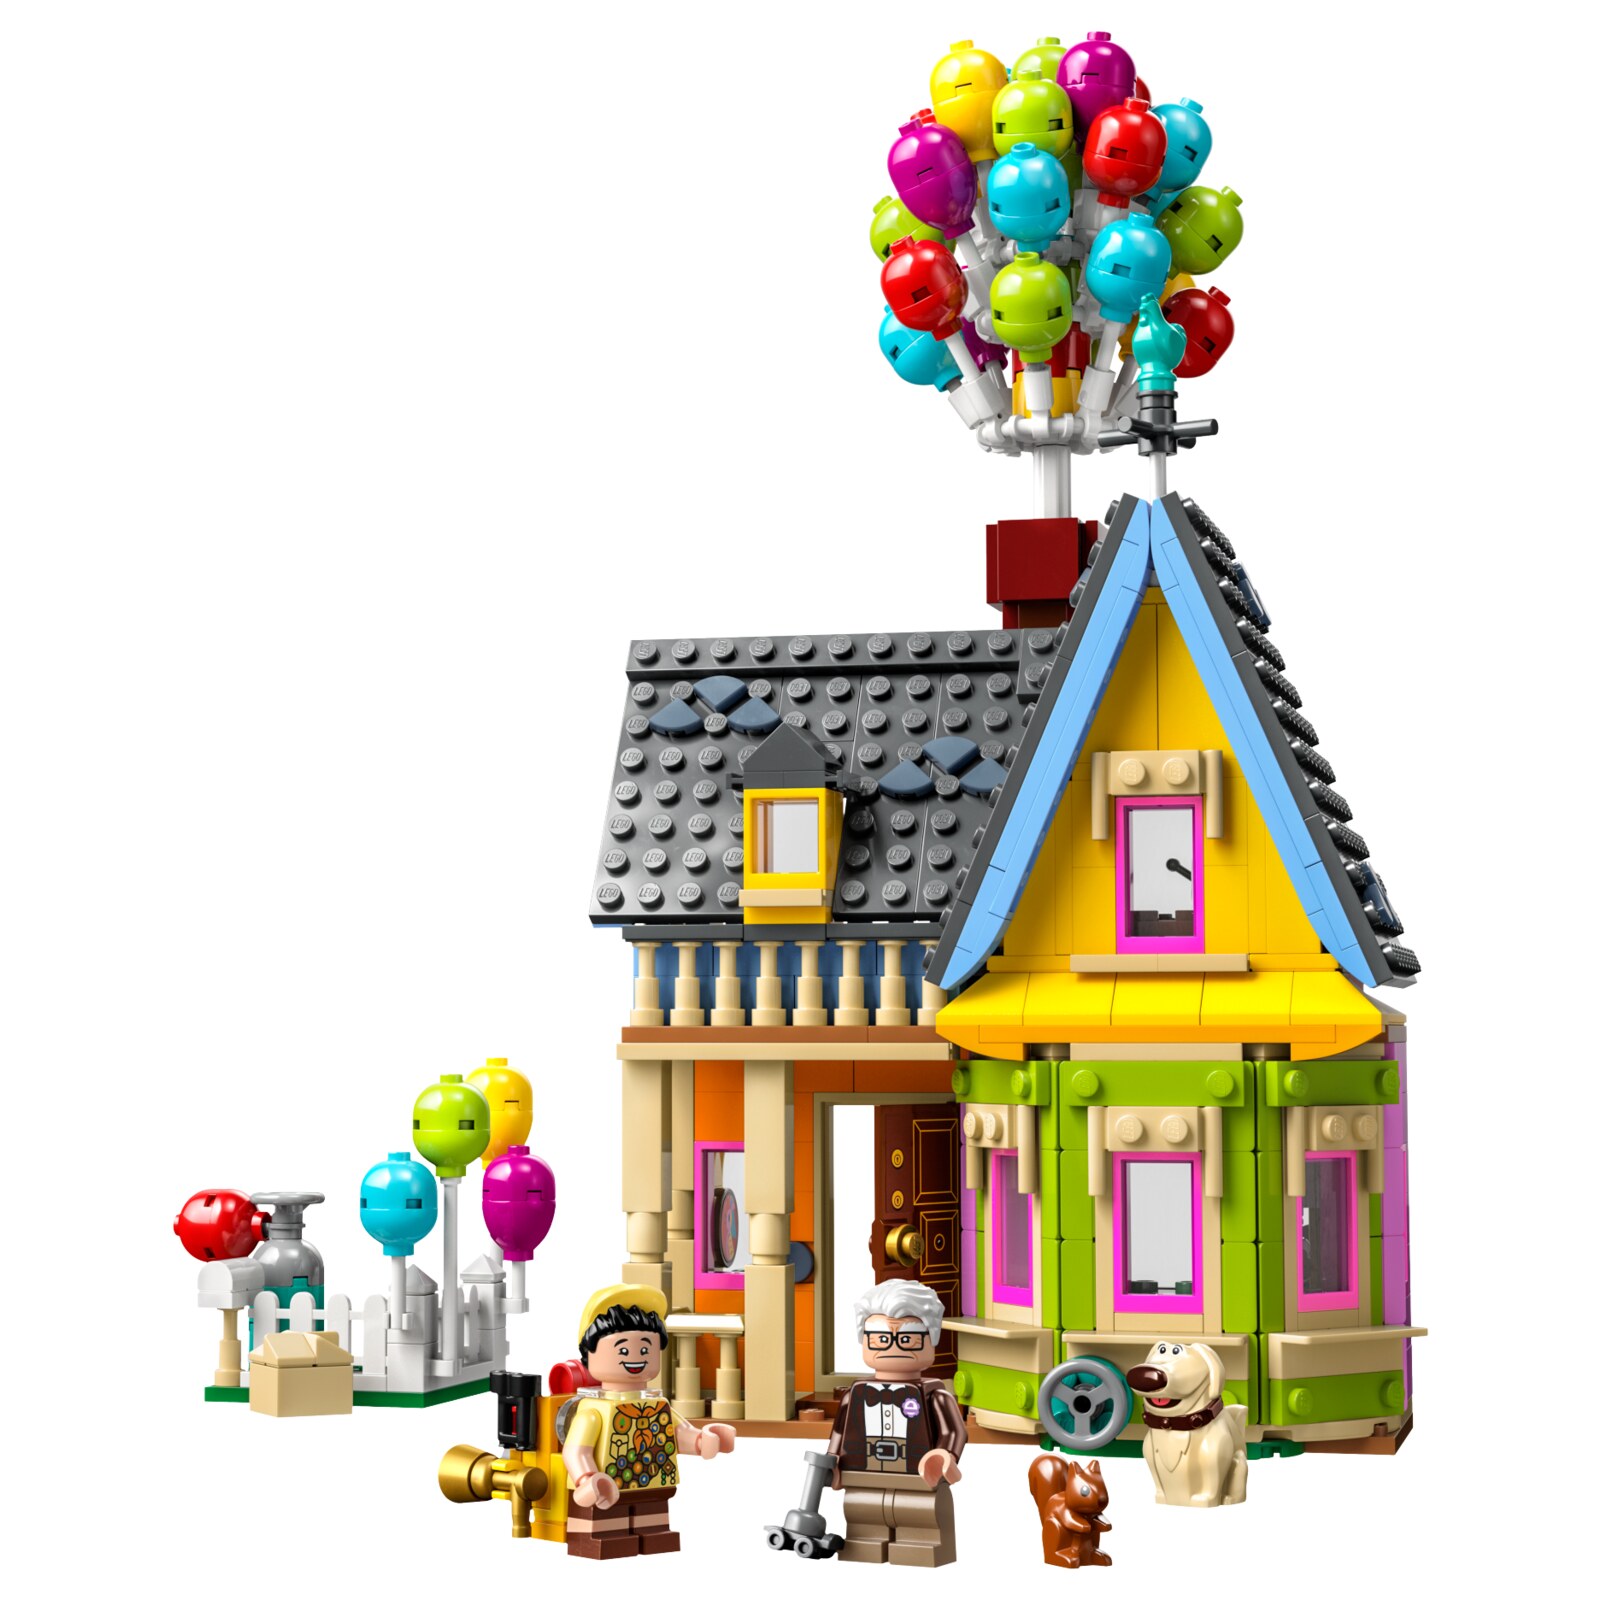 Конструктор LEGO Disney Дом из мультфильма Вверх, 598 деталей, 43217 конструктор lego 21318 tree house